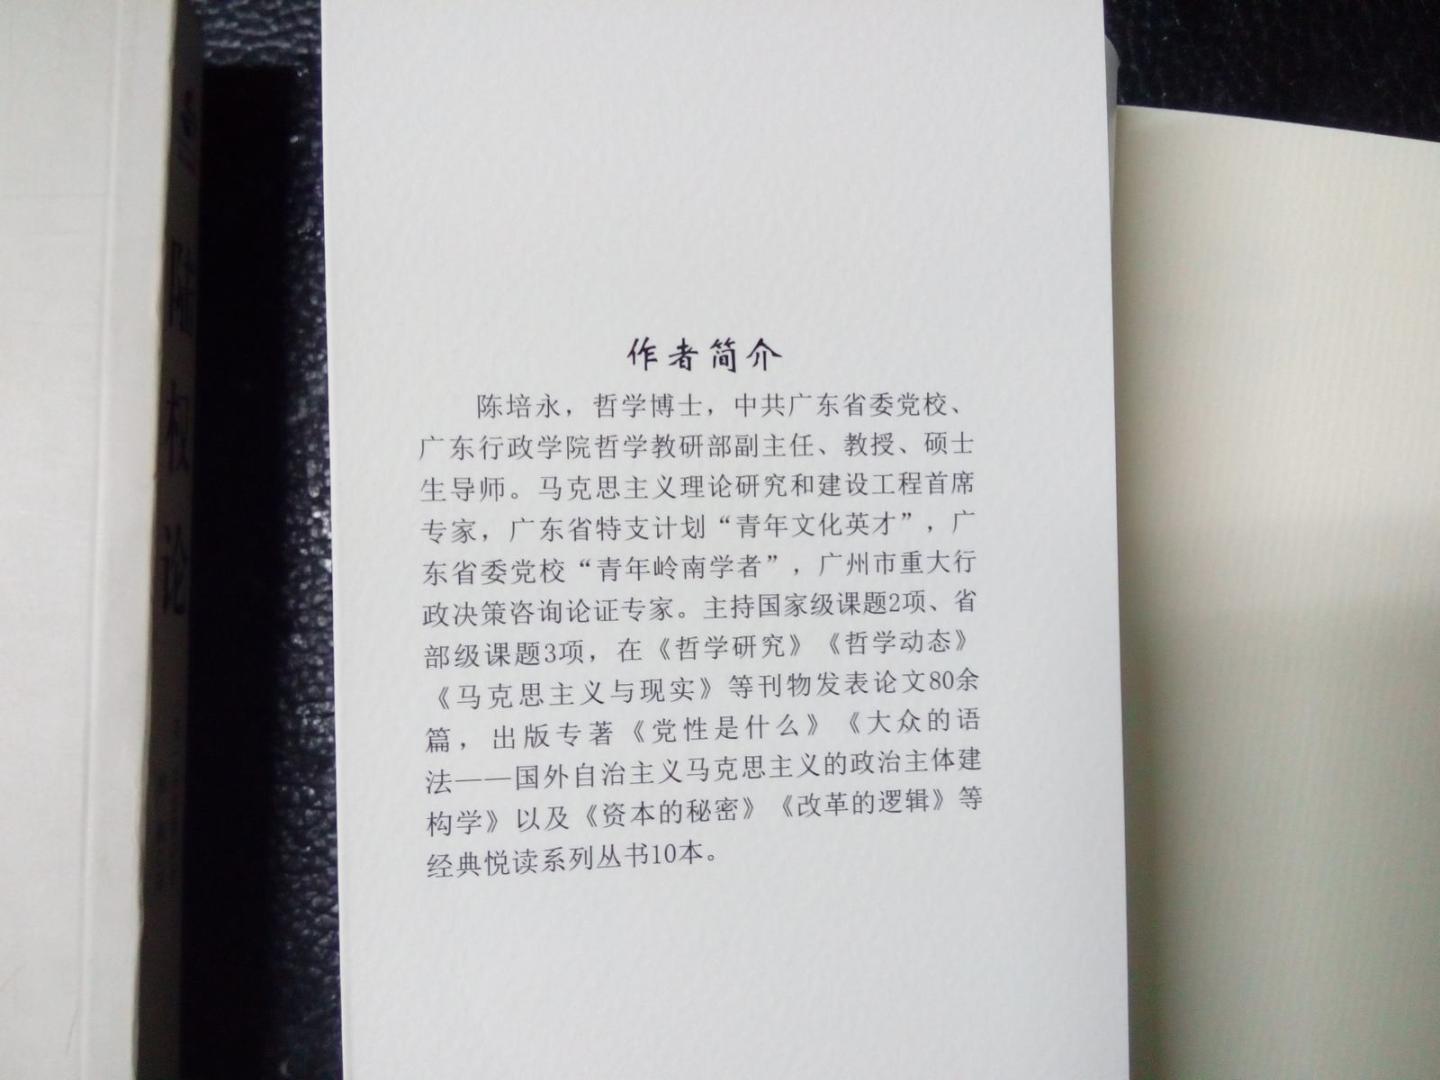 一本帮助大家更好理解邓小平理论的书，浅显易懂，比较不错。